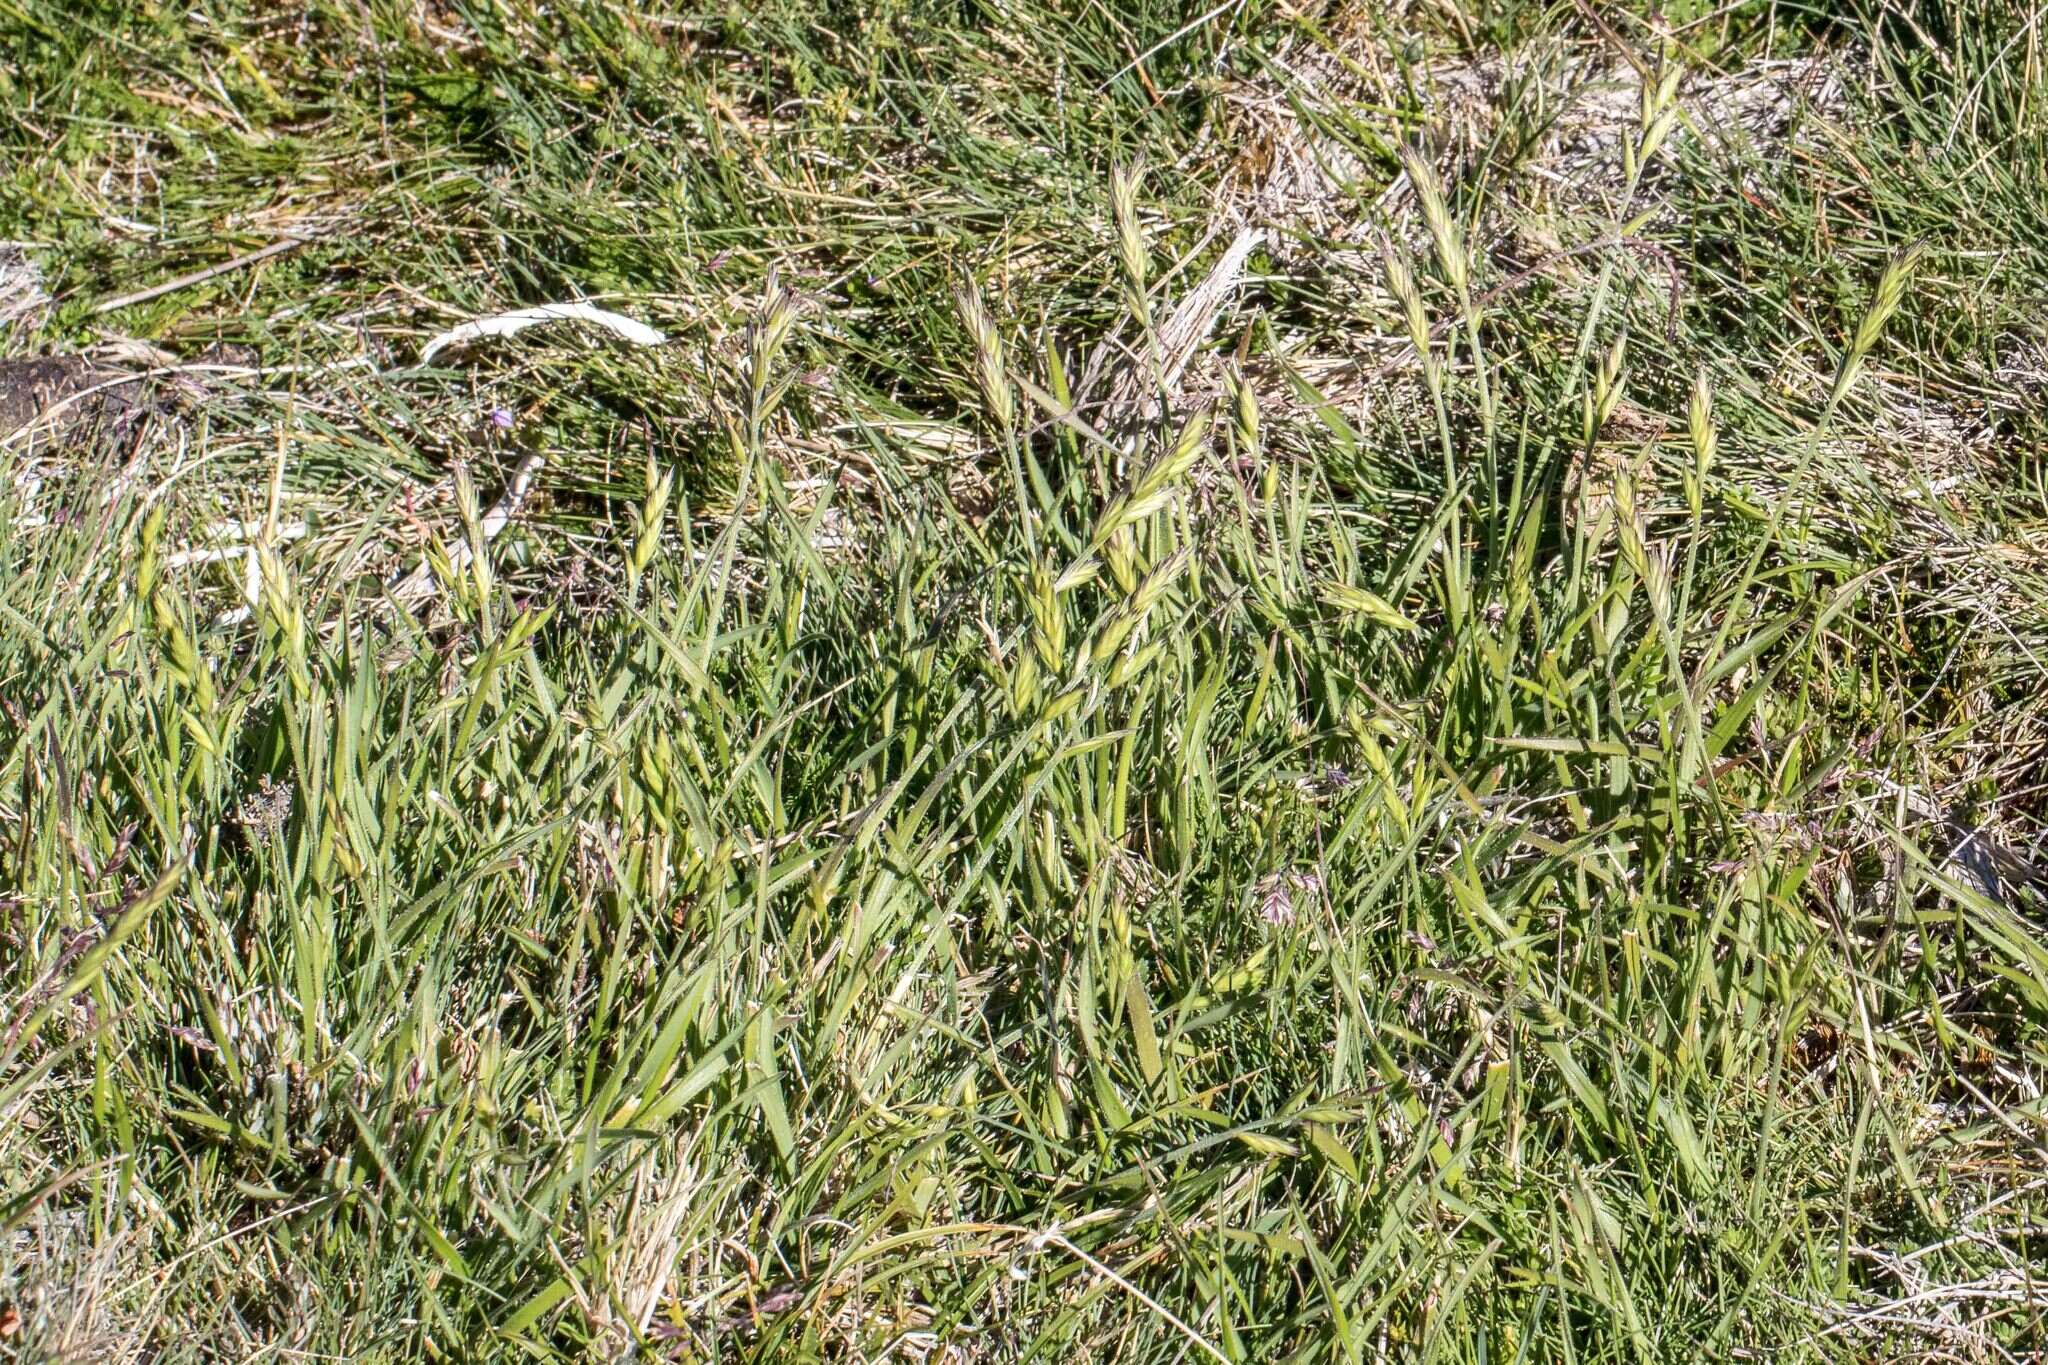 Sivun Australopyrum kuva